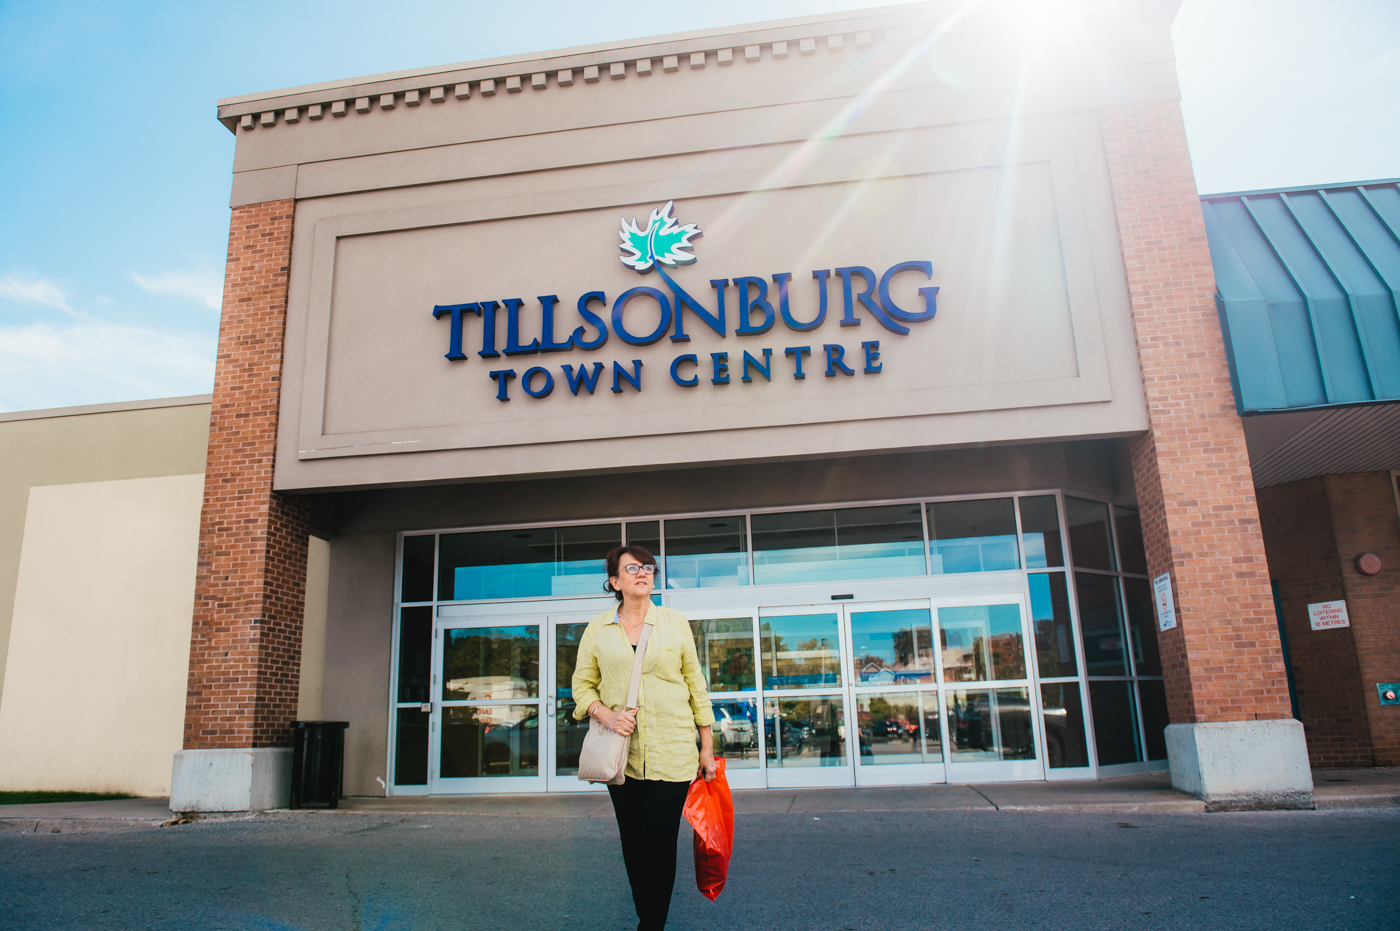 Tillsonburg Town Centre Mall accessible entrance